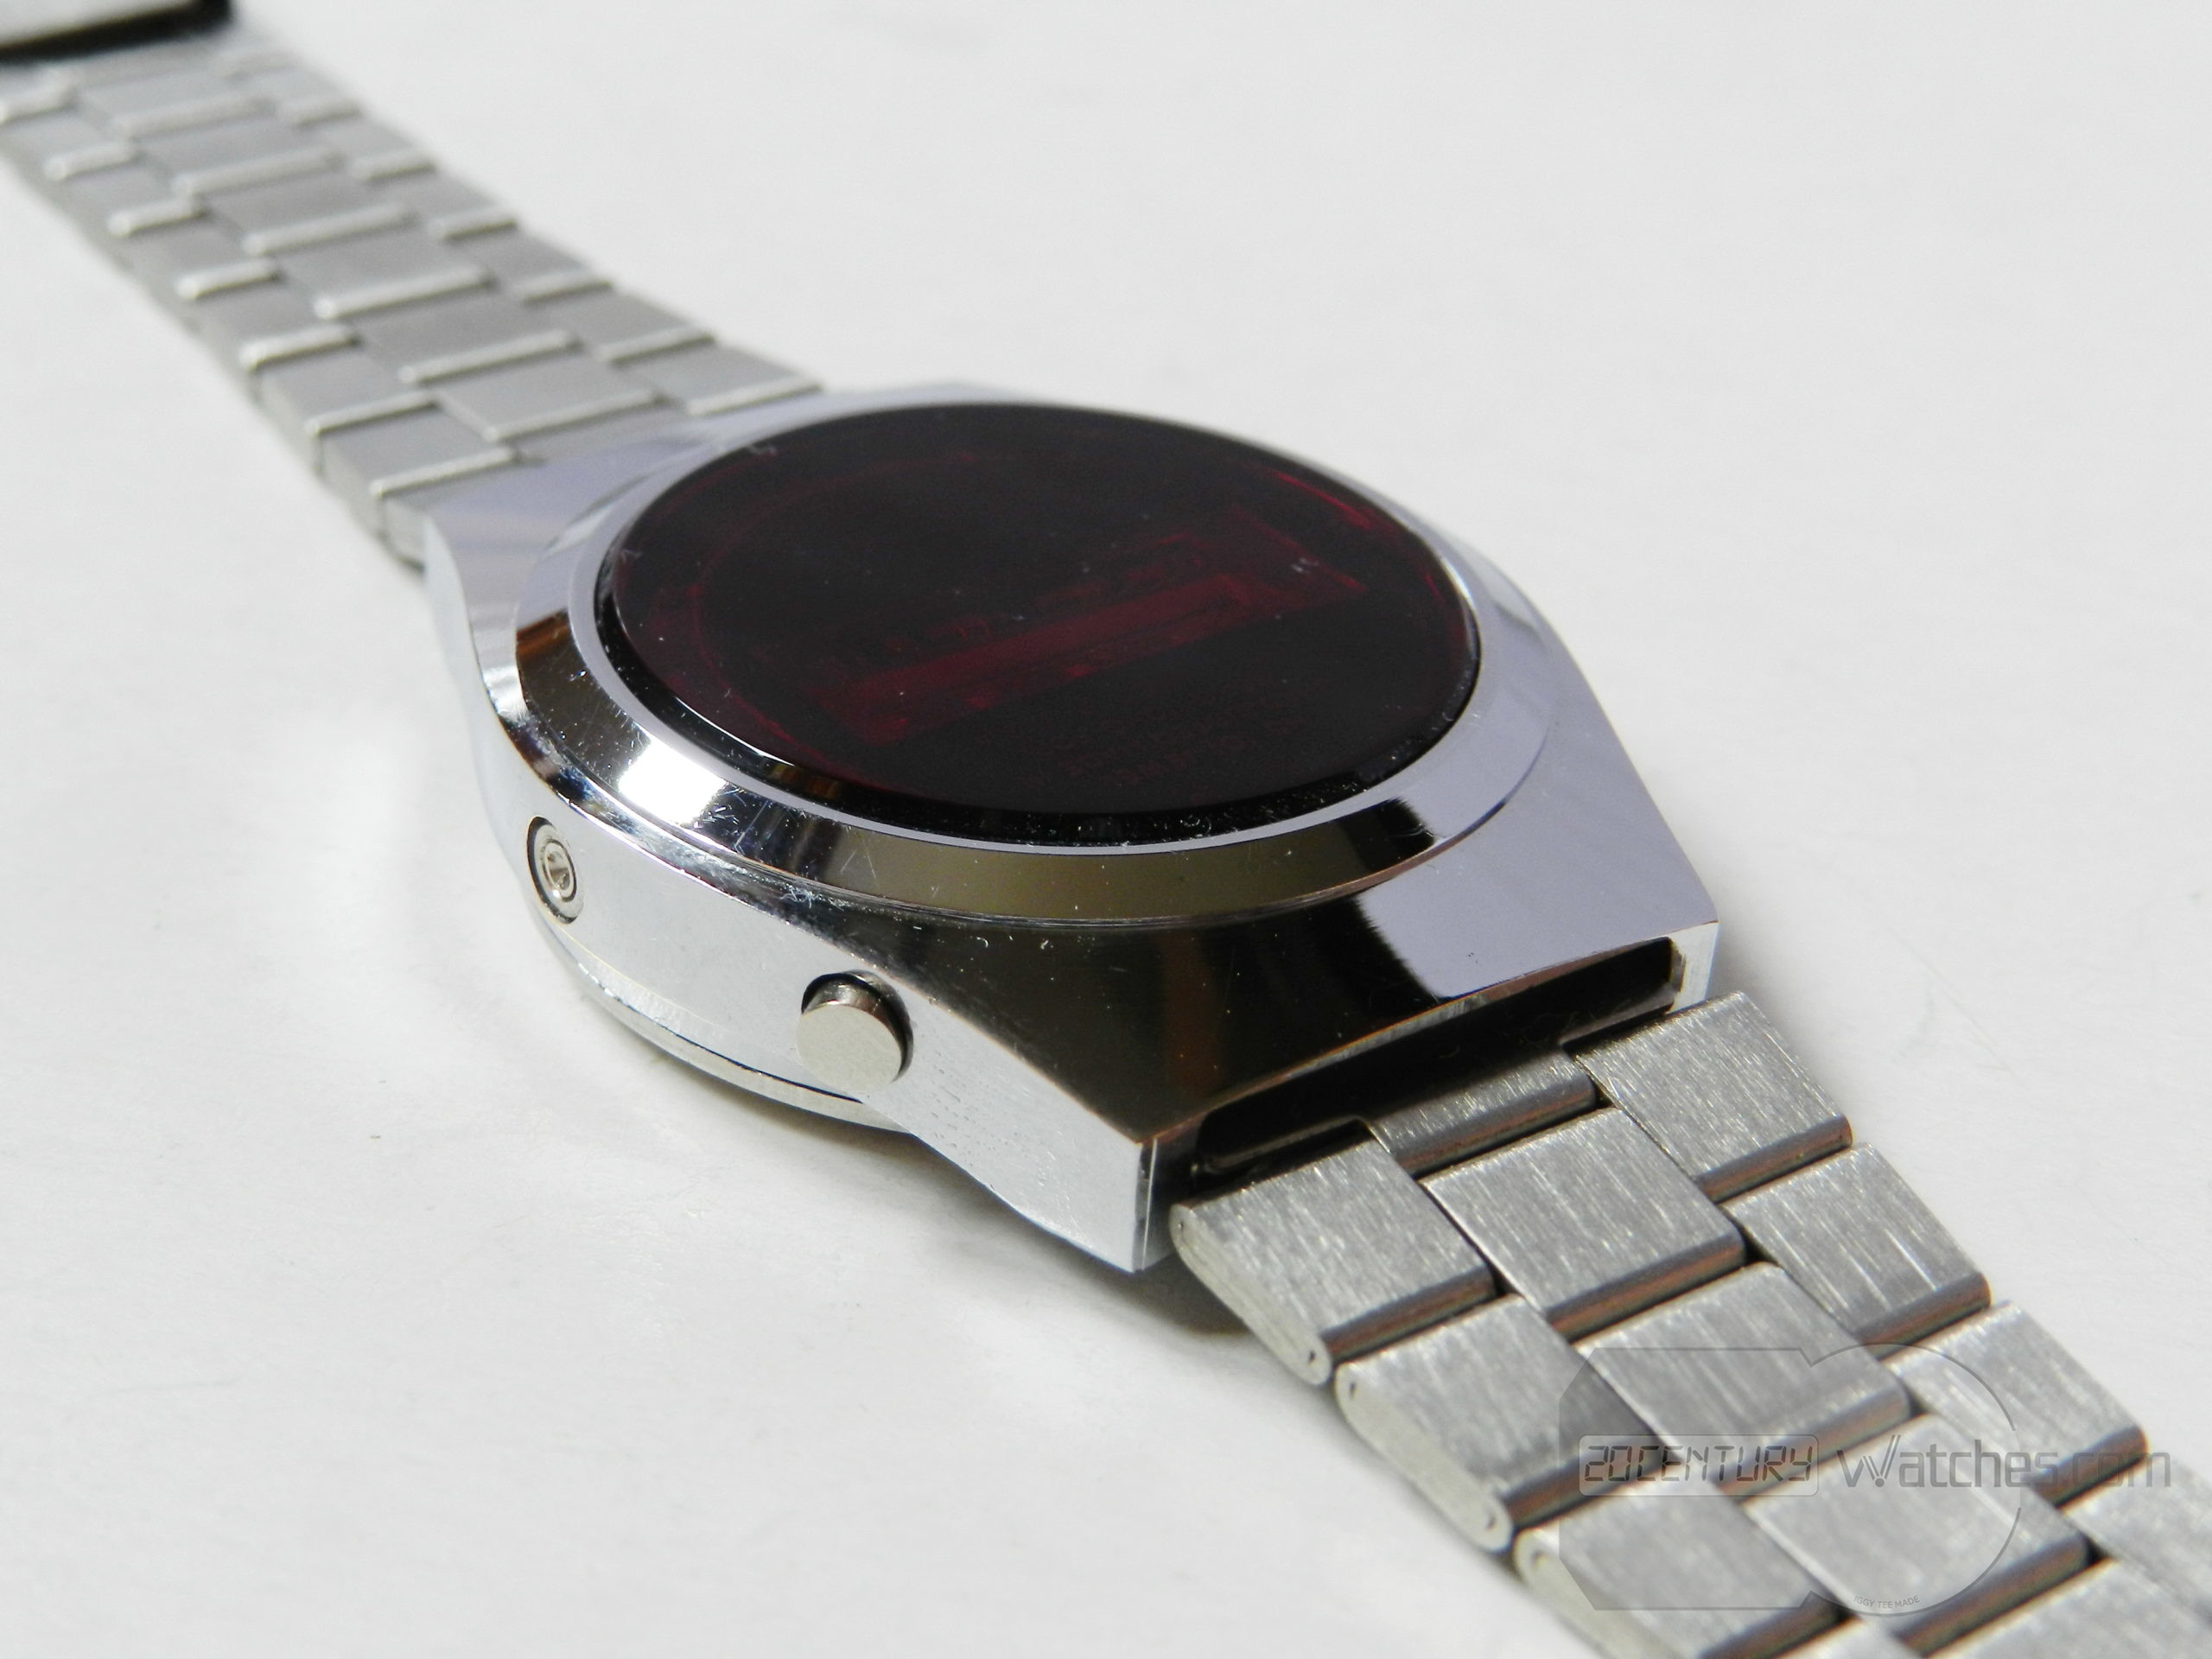 Lambda LED watch – 20th Century Watches